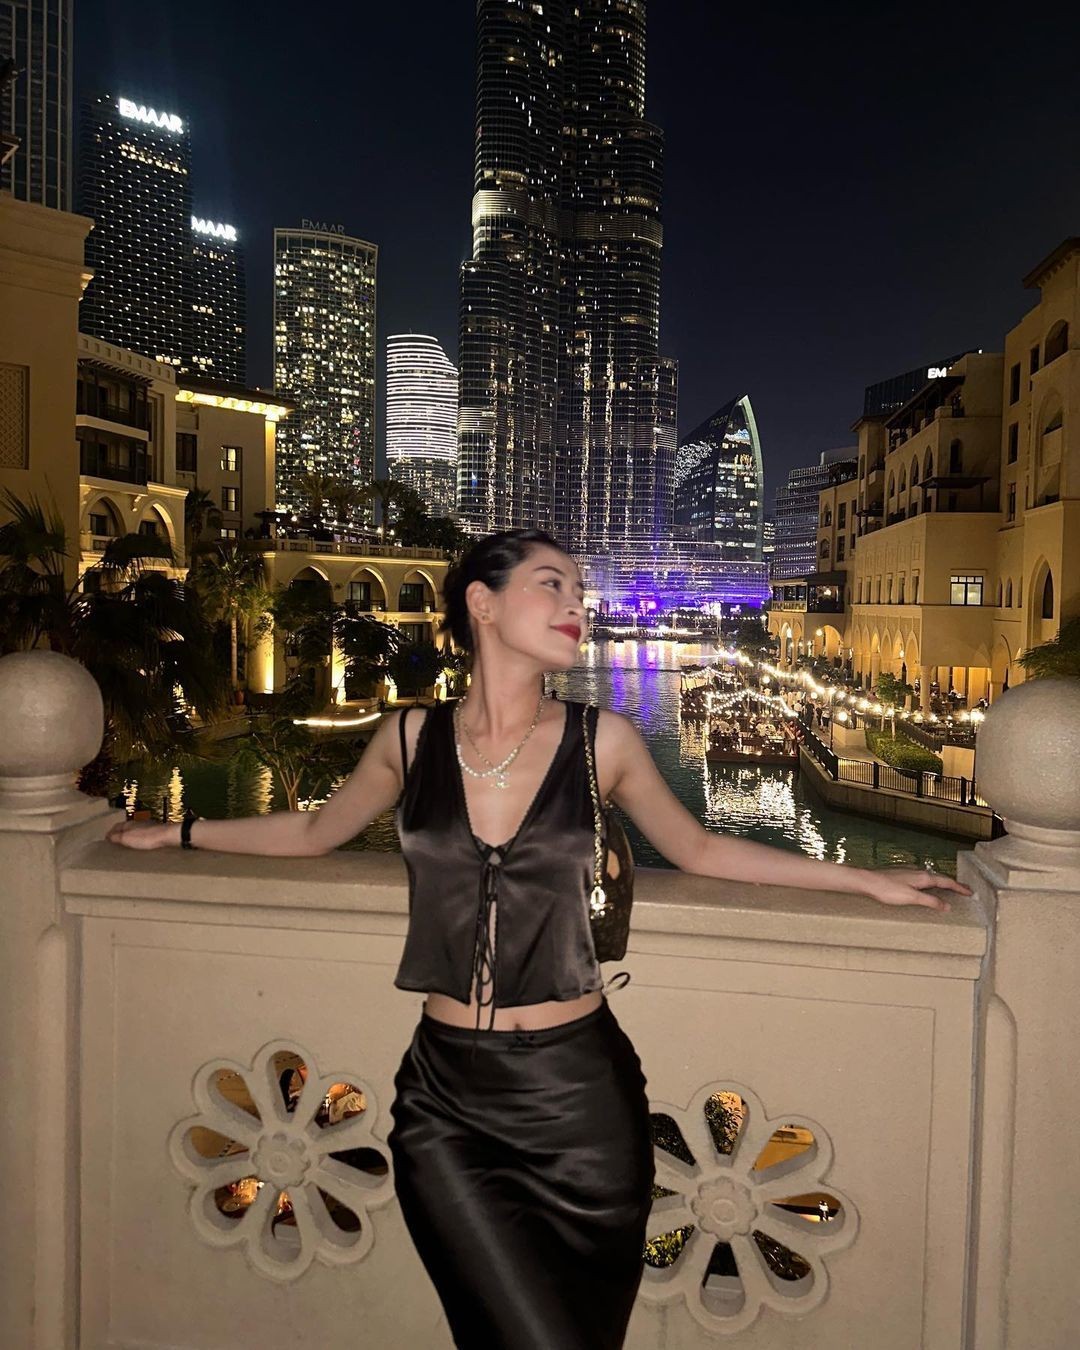 Trang phục được Chi Pu diện trong chuyến đi Dubai chủ yếu đến từ các local brand, kiểu dáng trẻ trung và cập nhật xu hướng. Vì lịch trình hoạt động dày đặc, gần đây nữ ca sĩ giảm cân nên trông càng thon thả.